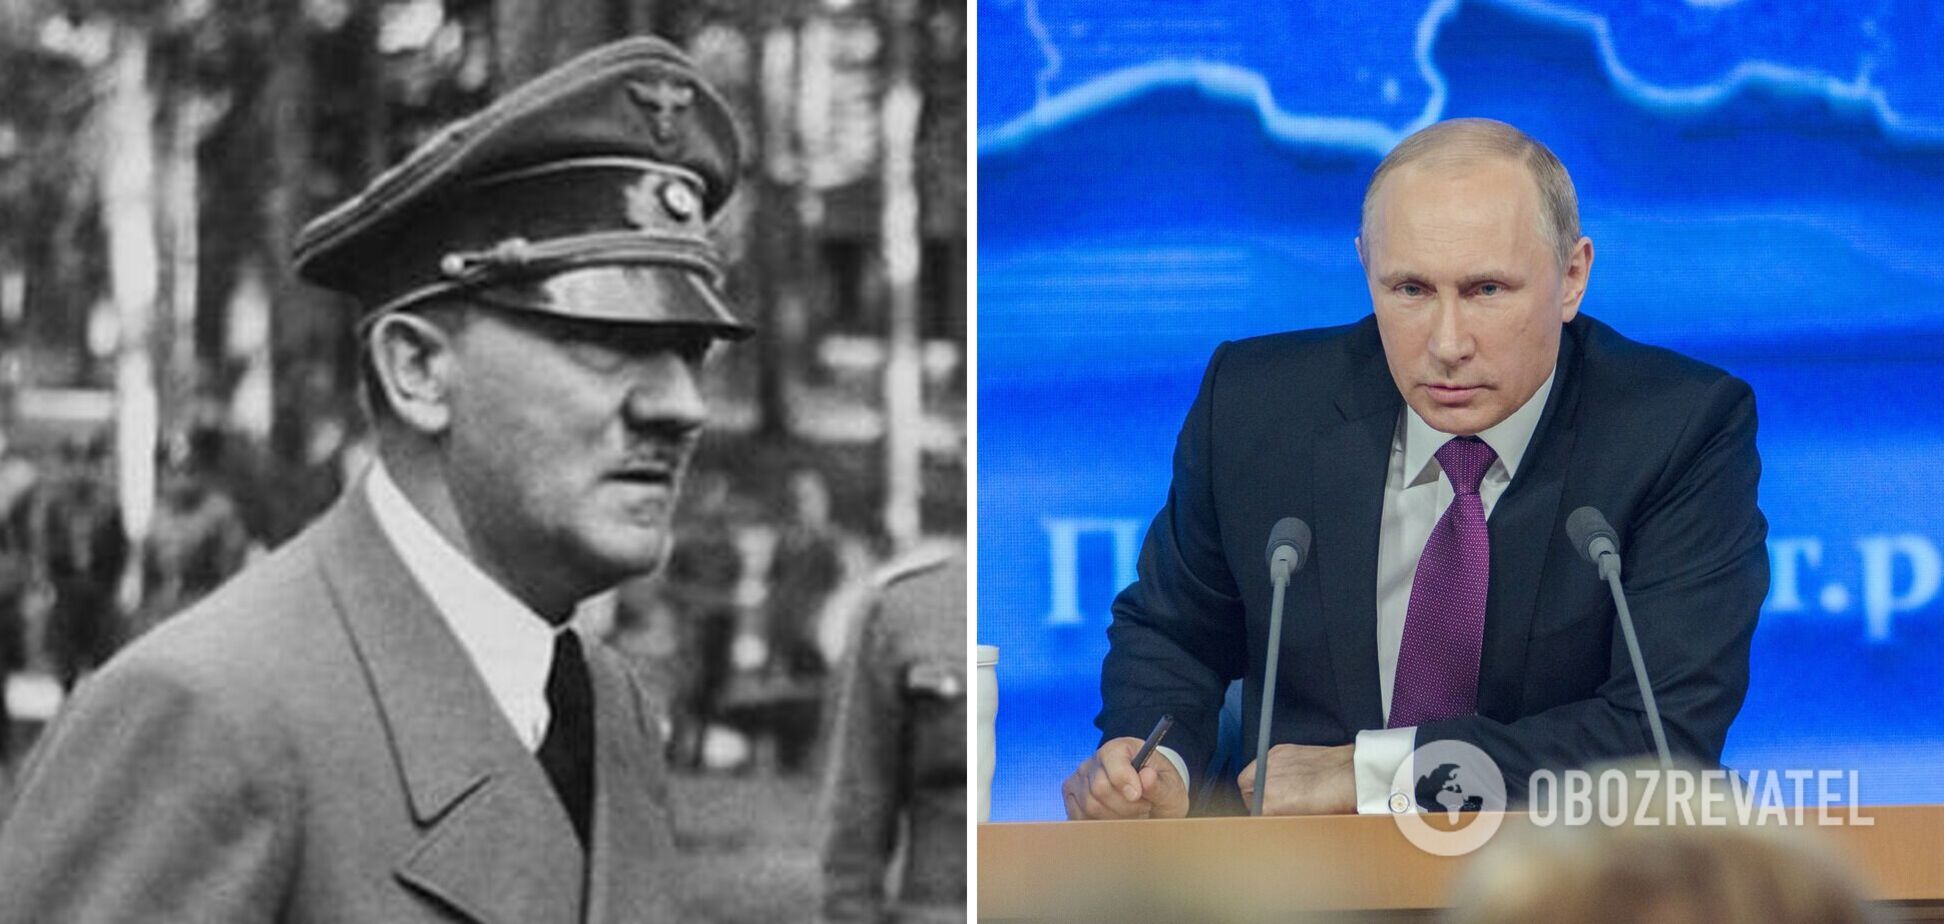 Путін повторює епізоди з біографії Гітлера у своєму житті